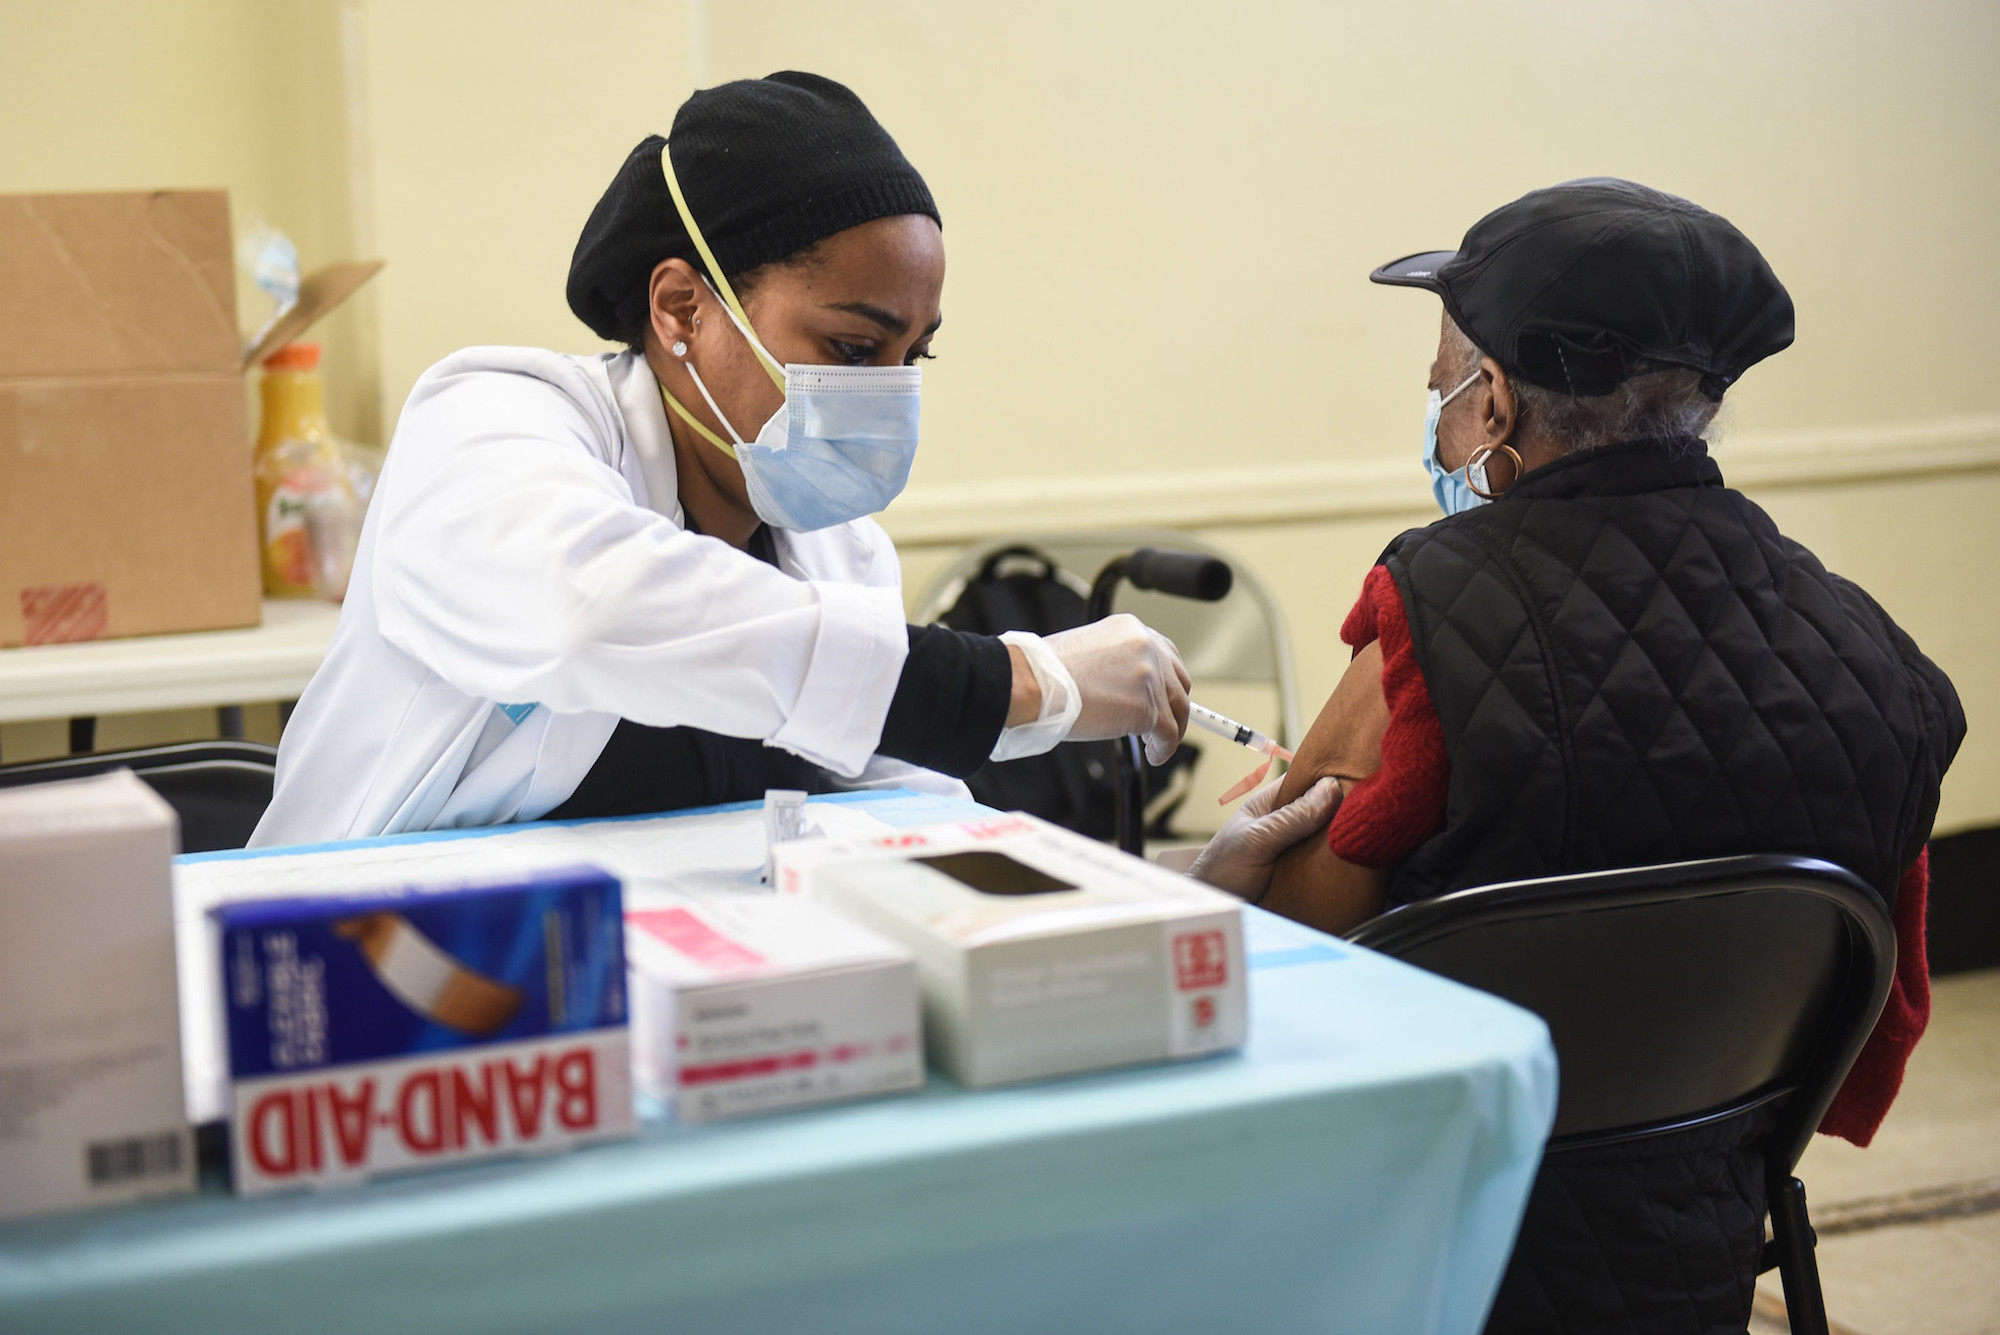 NYC begins door-to-door COVID-19 vaccinations for homebound seniors